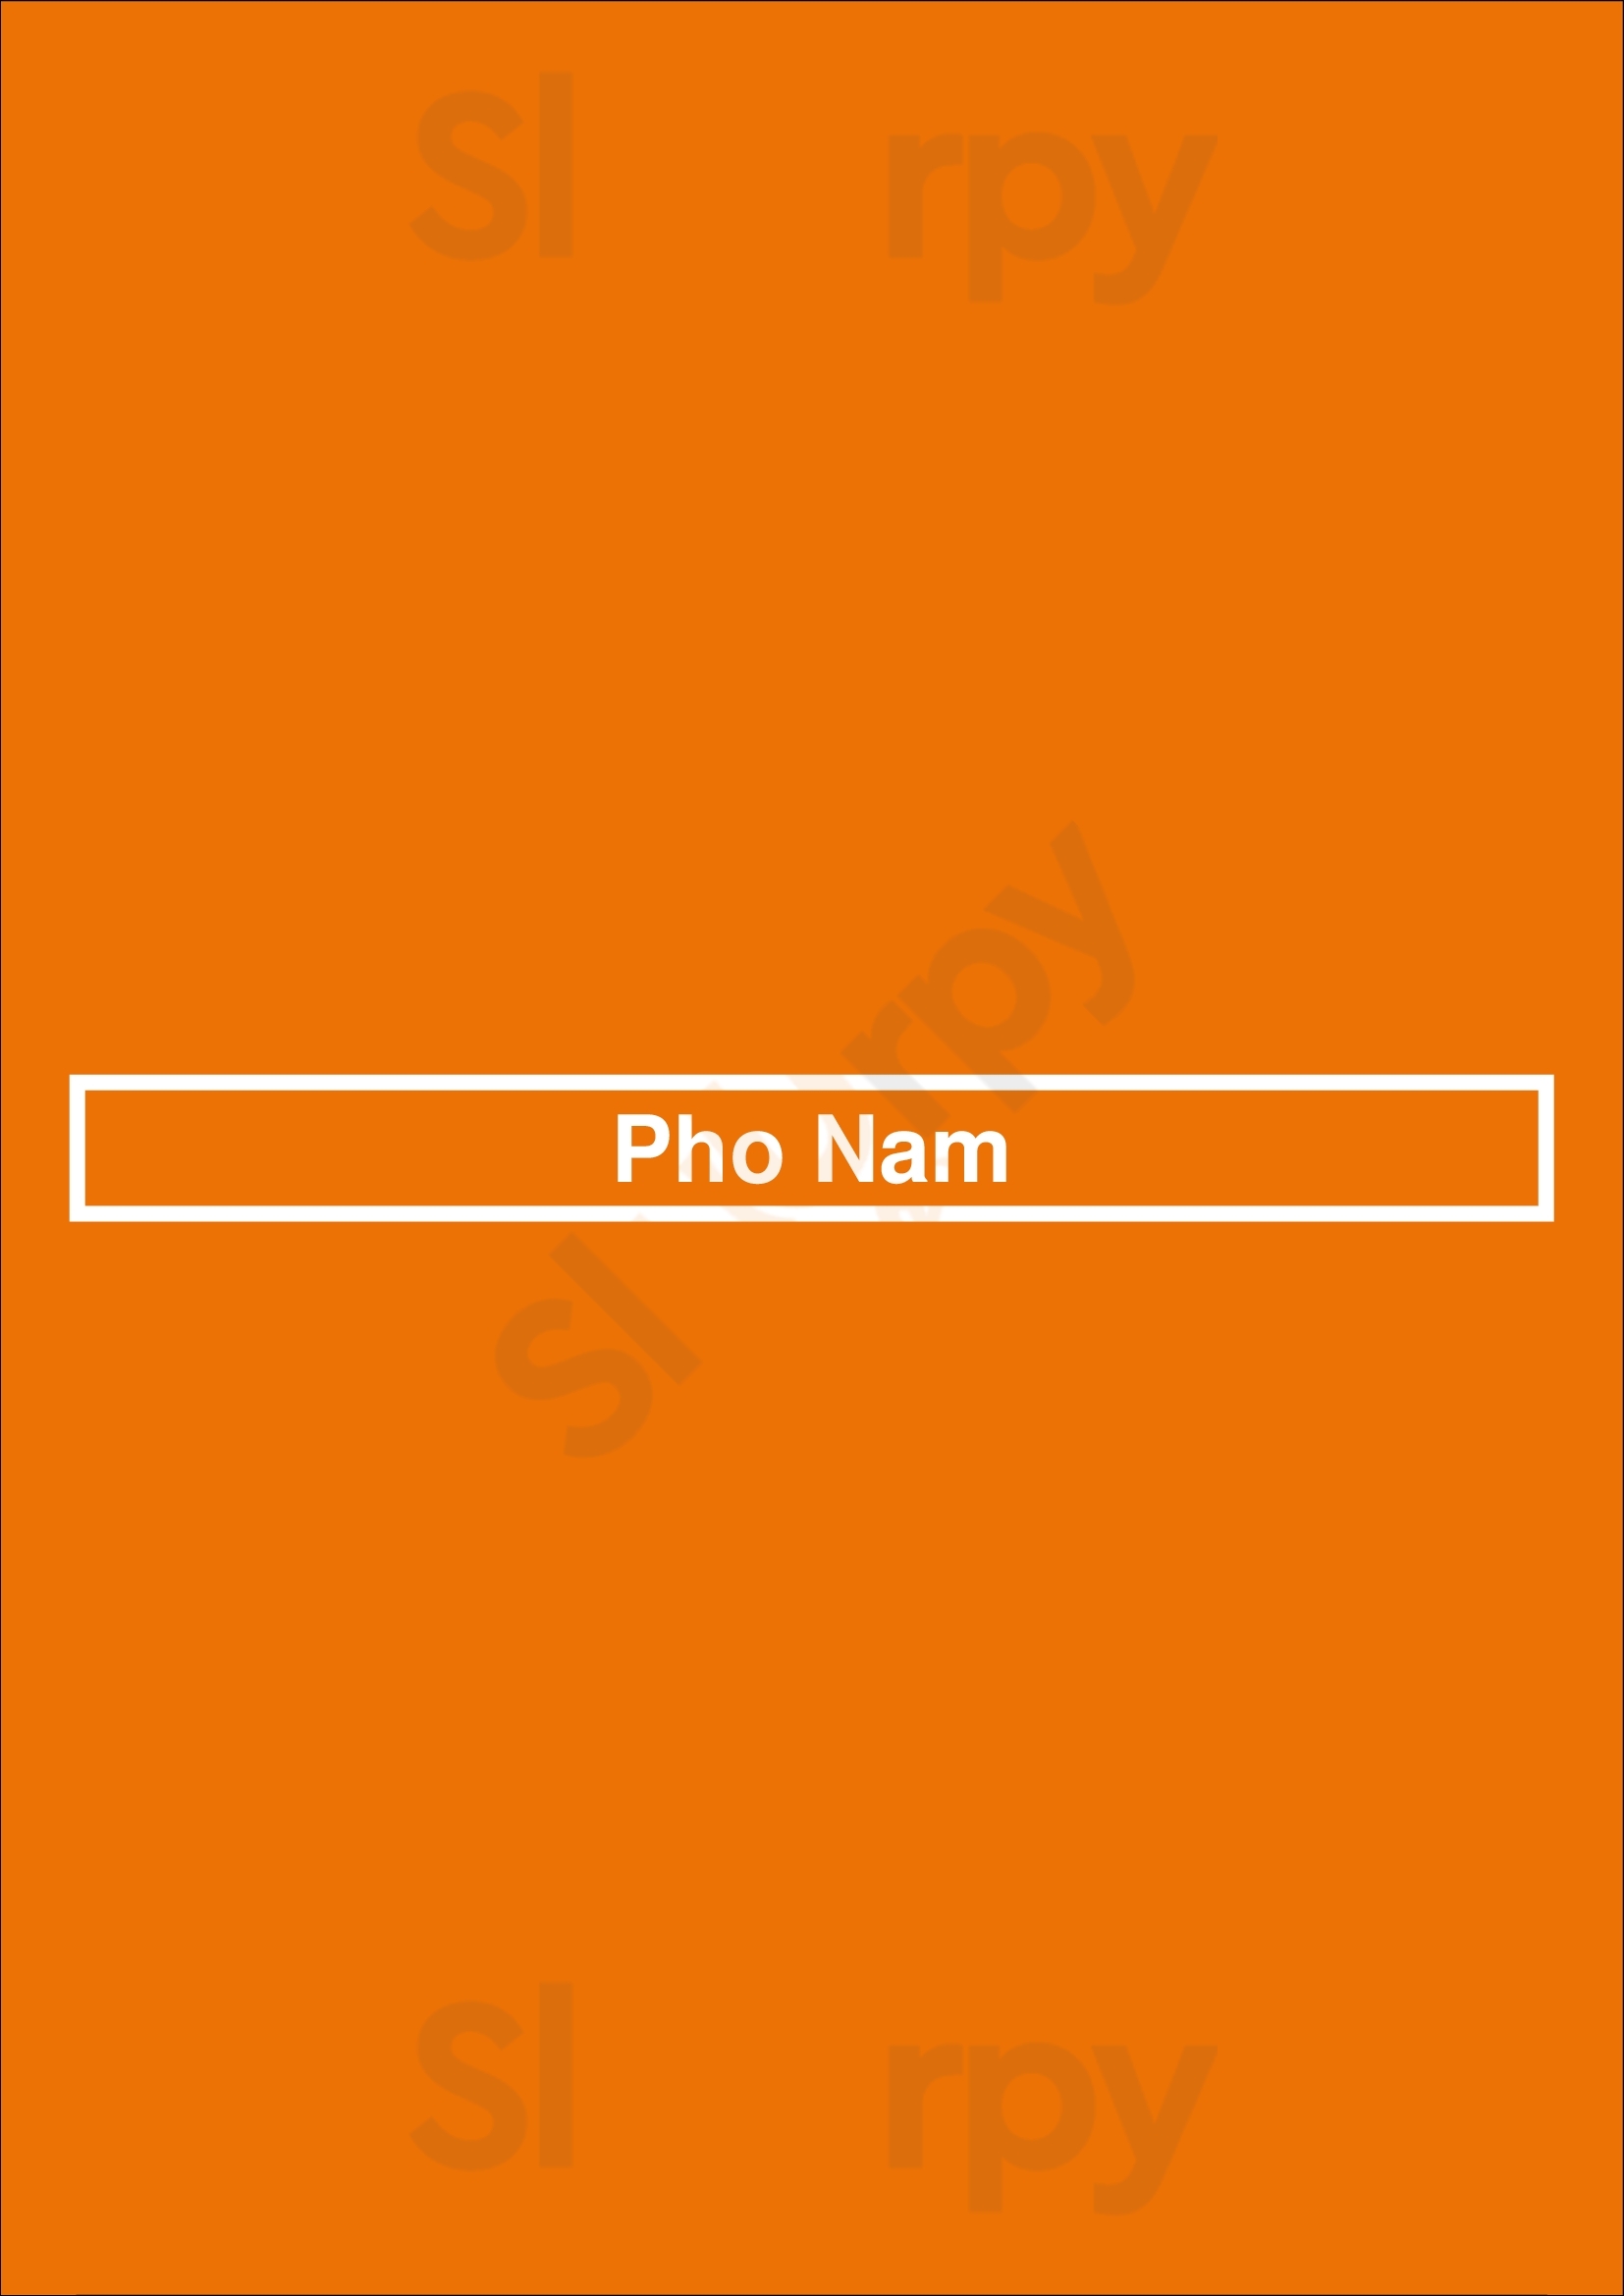 Pho Nam New Westminster Menu - 1